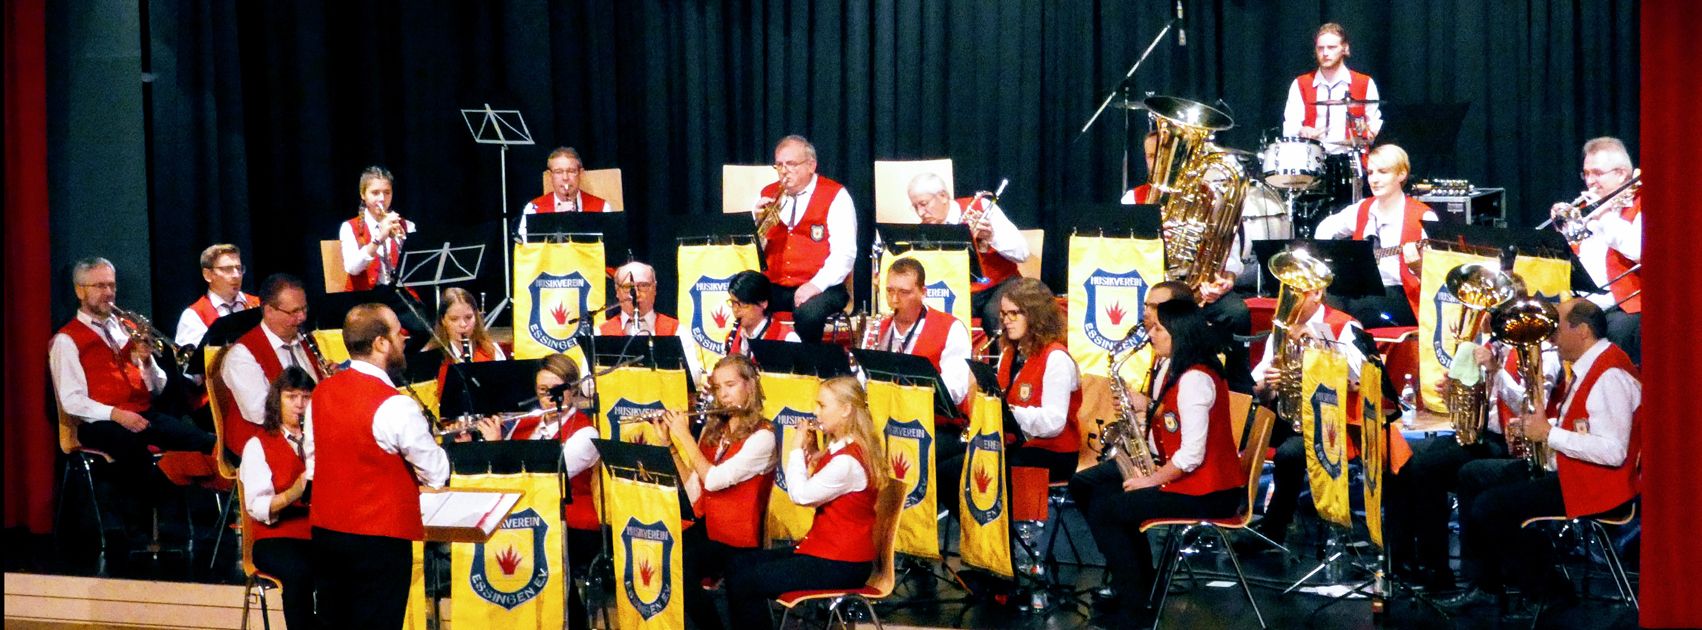 Bläser-Band | Musikverein Essingen